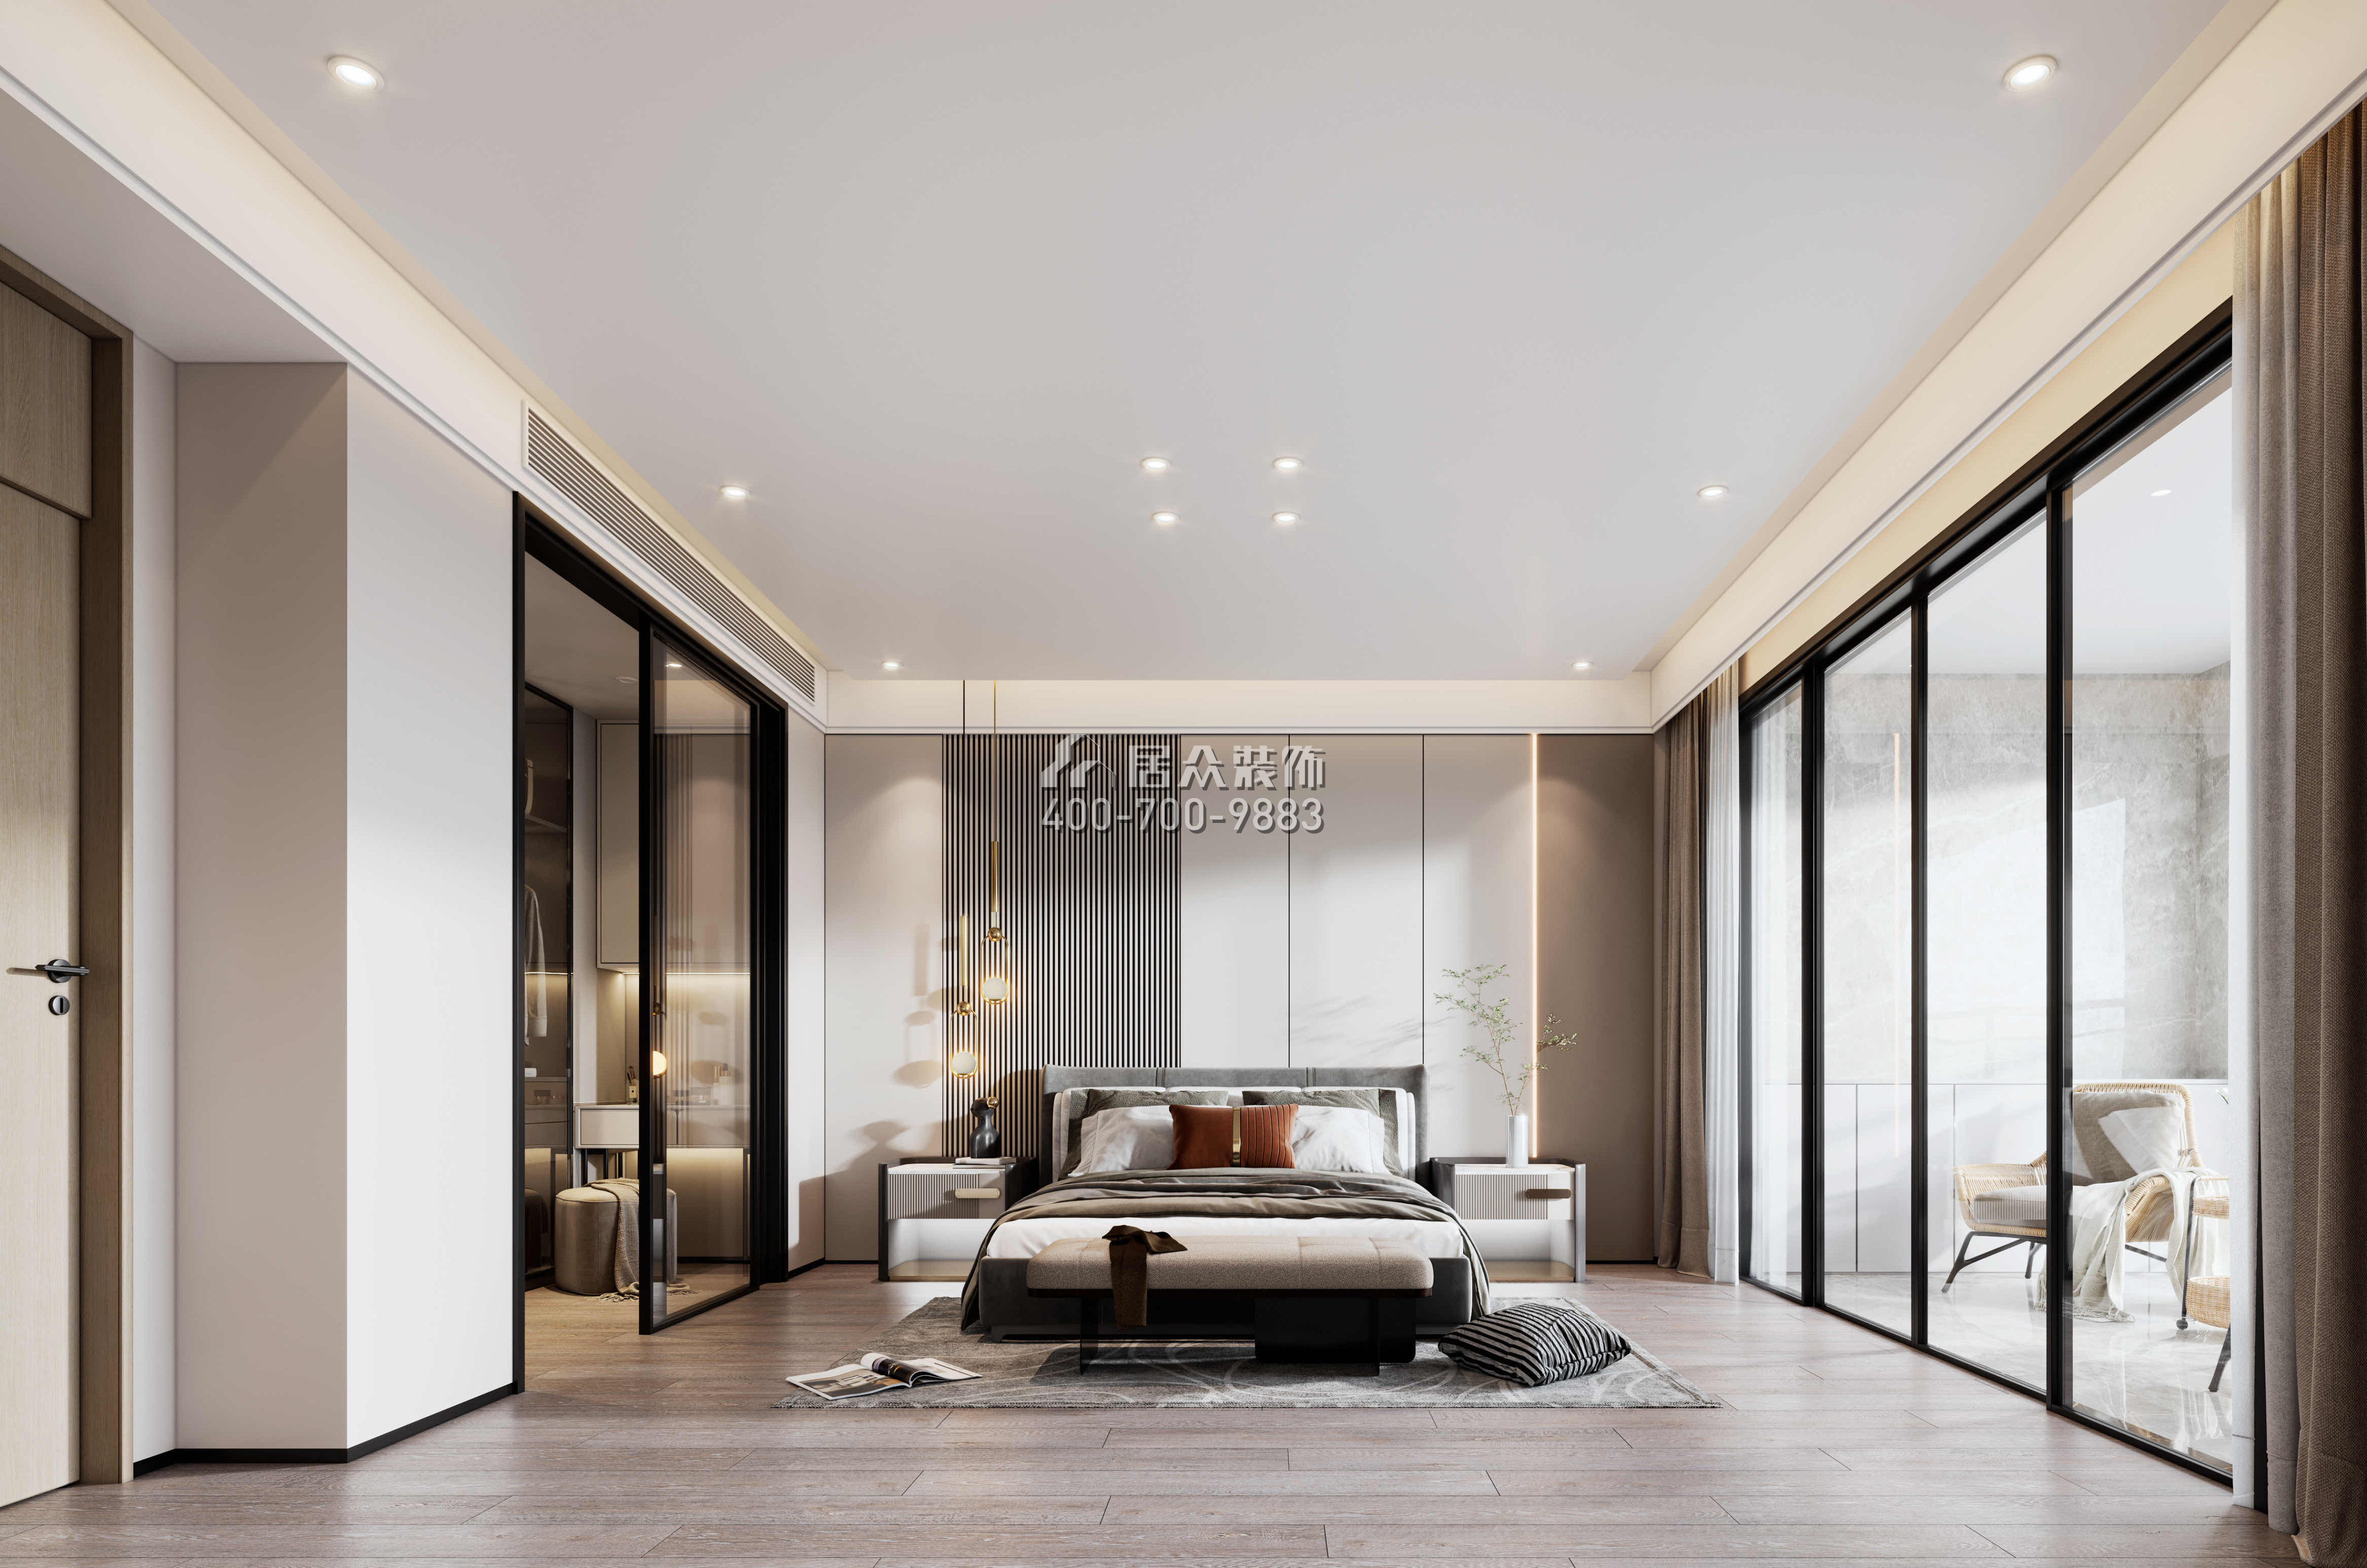 金天地悦湾450平方米现代简约风格叠墅户型卧室装修效果图